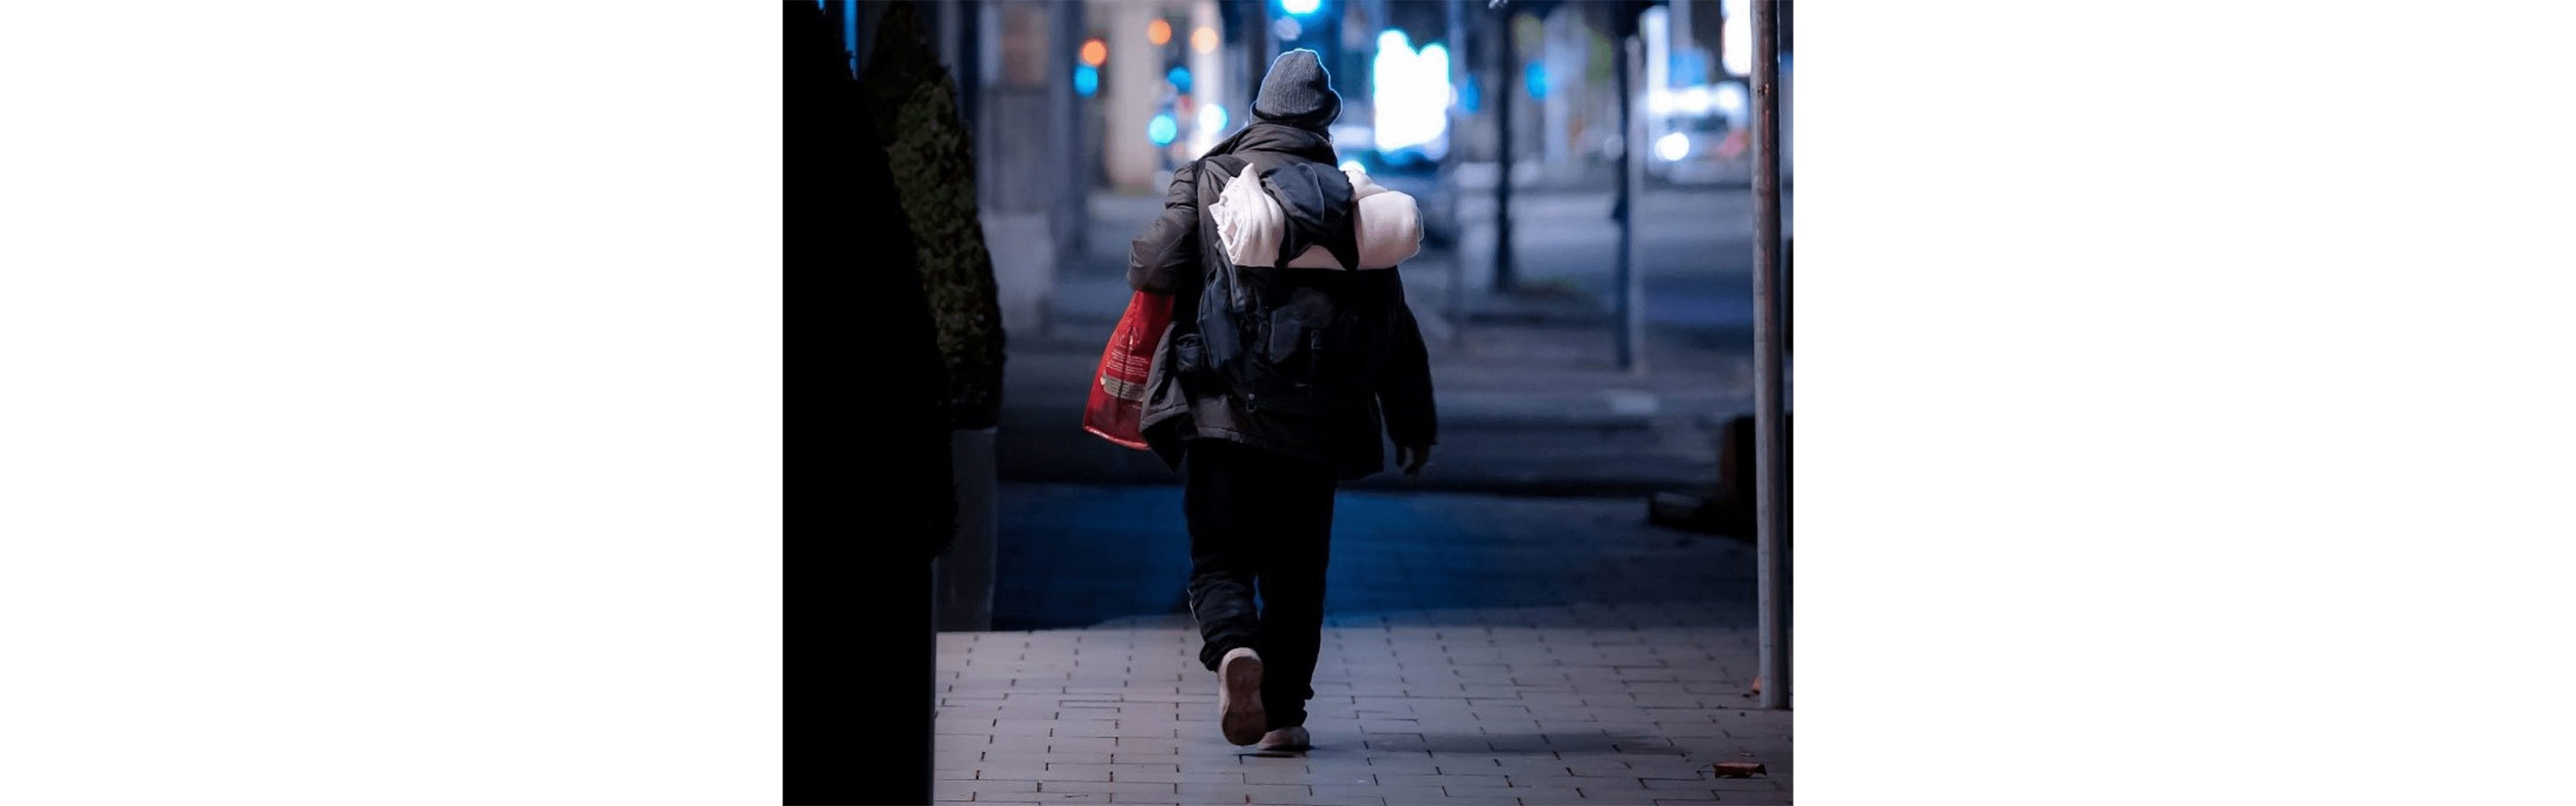 Symbolbild einer obdachlosen Person in der Nacht.